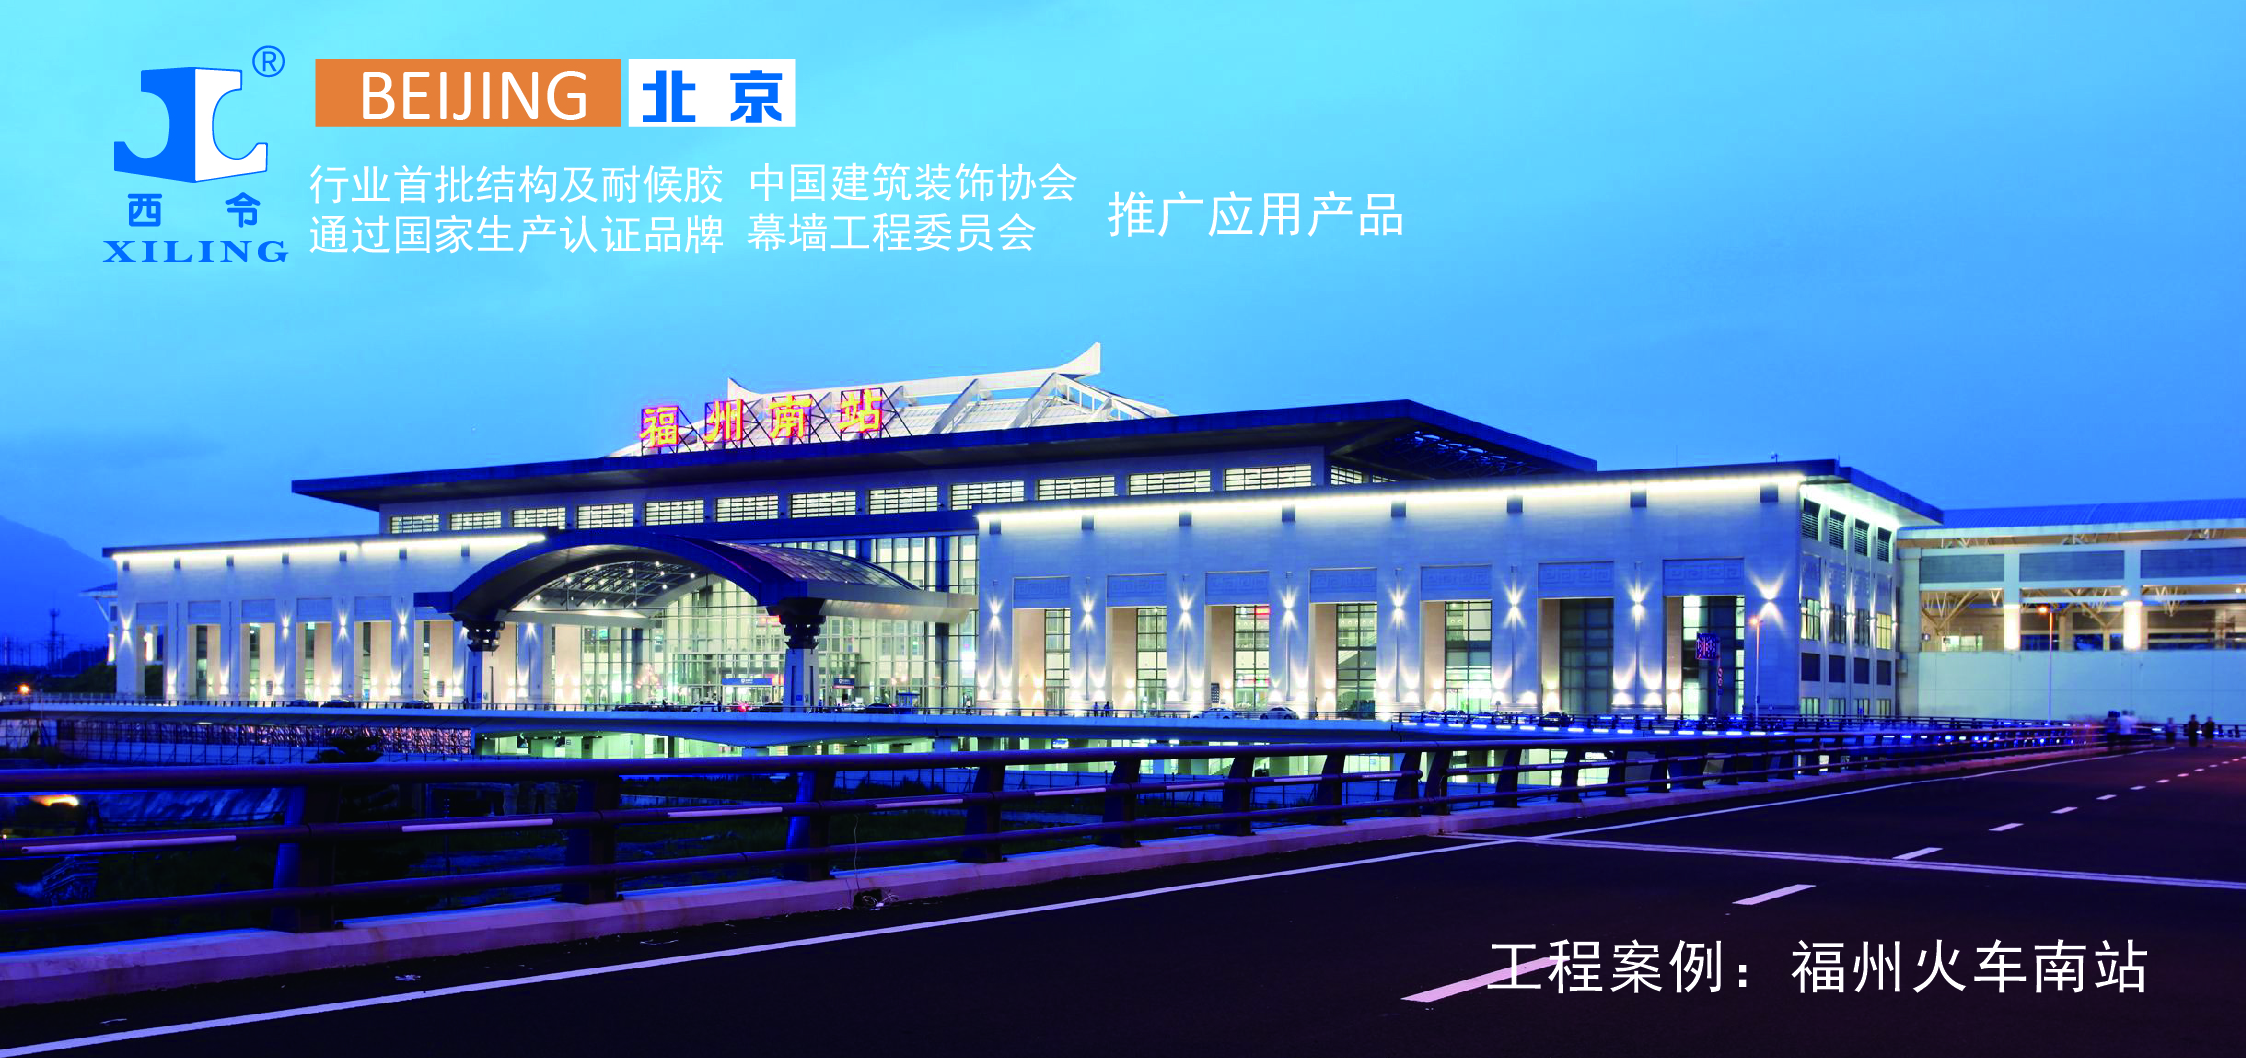 福州南站(Fuzhounan Raliway Station)位于中国福建省福州市仓山区，是中国铁路南昌局集团有限公司管辖的一等站，是中国十大区域性铁路客运交通枢纽之一， 是福建省最重要的综合交通枢纽，也是福州市对外开放的重要门户。  福州南站总建筑面积19.7万平方米，旅客候车面积21744平方米。       项目要求     工程对外观要求极高，要求梁柱表面平整光滑，线条规则分明，外观色泽一致，混凝土内实外光，消除蜂窝麻面及气泡。     西令解决方案     XL-1214是专为各种幕墙（玻璃幕墙 铝板幕墙等等）耐候密封而设计的硅酮密封胶，具有优异的耐候性能。使用时用挤胶枪将胶从密封胶筒中挤到需要密封的接缝中，密封 胶在室温下吸收空气中的水分，固化成弹性体，形成有效密封。本产品获得中国建筑材料检验认证 中心CTC产品质量认证并已列入保障性住房建设材料部品采购信息平台。完全达到客户预期要求     其他     福州南站是自2004年12月温福铁路开工建设四年以来福州市铁路建设快速发展的延续。福州南站作为中国十大区域性铁路客运交通枢纽之一，是汇集铁路、地铁、常规公交、汽车客运、出租车、社会车辆等各种交通方式于一体的现代化大型铁路旅客站房，也是中国东南沿海快速铁路通道上已开工建设的最大旅客站房，已成为连接长江三角洲、珠江三角洲的重要节点。